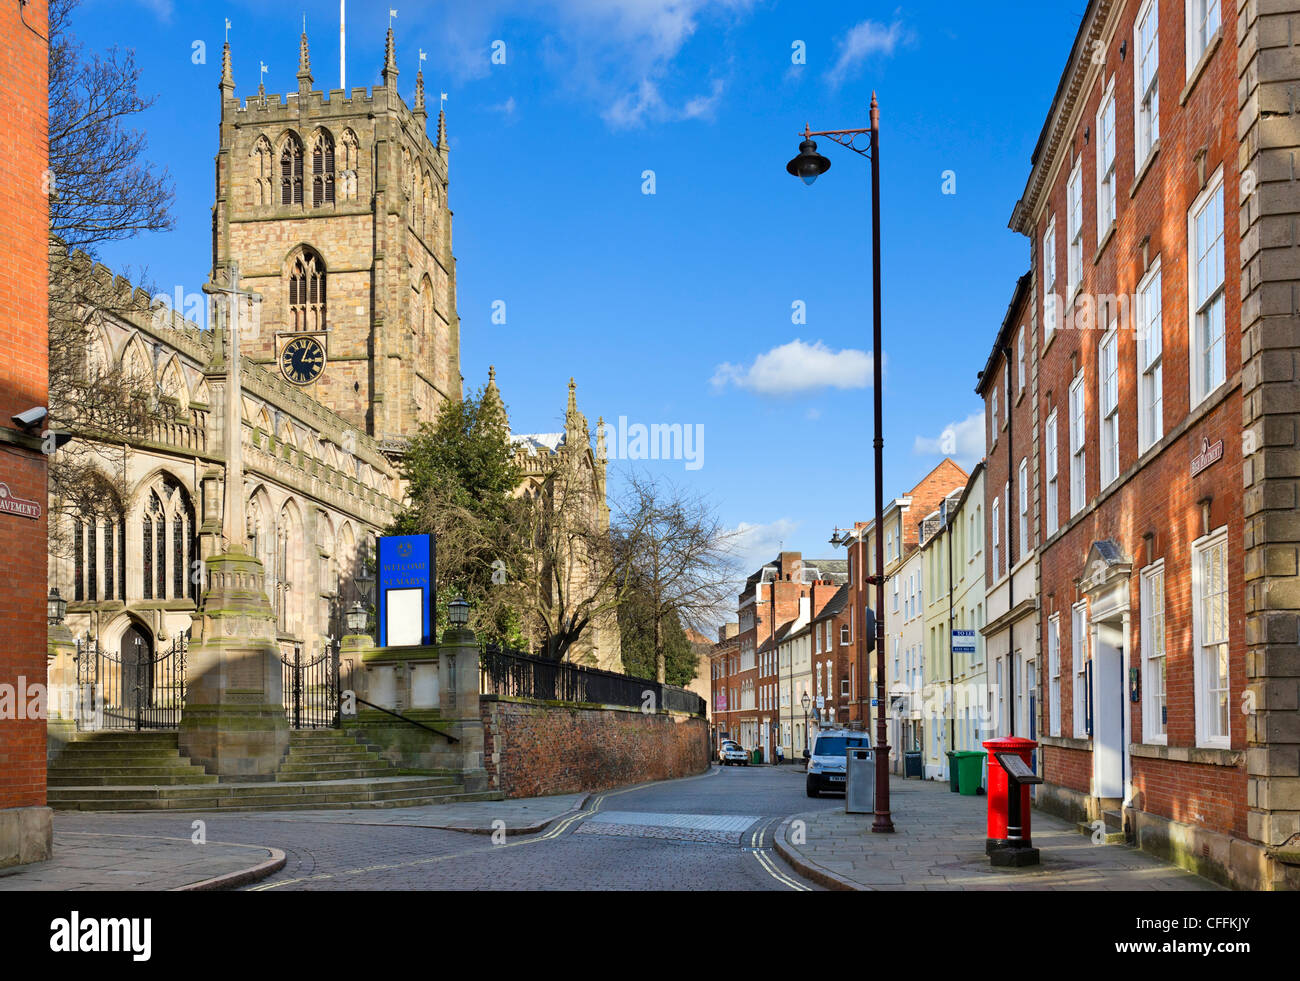 Alta marciapiede in Lace Market quartiere con la chiesa di St Mary a sinistra, Nottingham, Nottinghamshire, England, Regno Unito Foto Stock